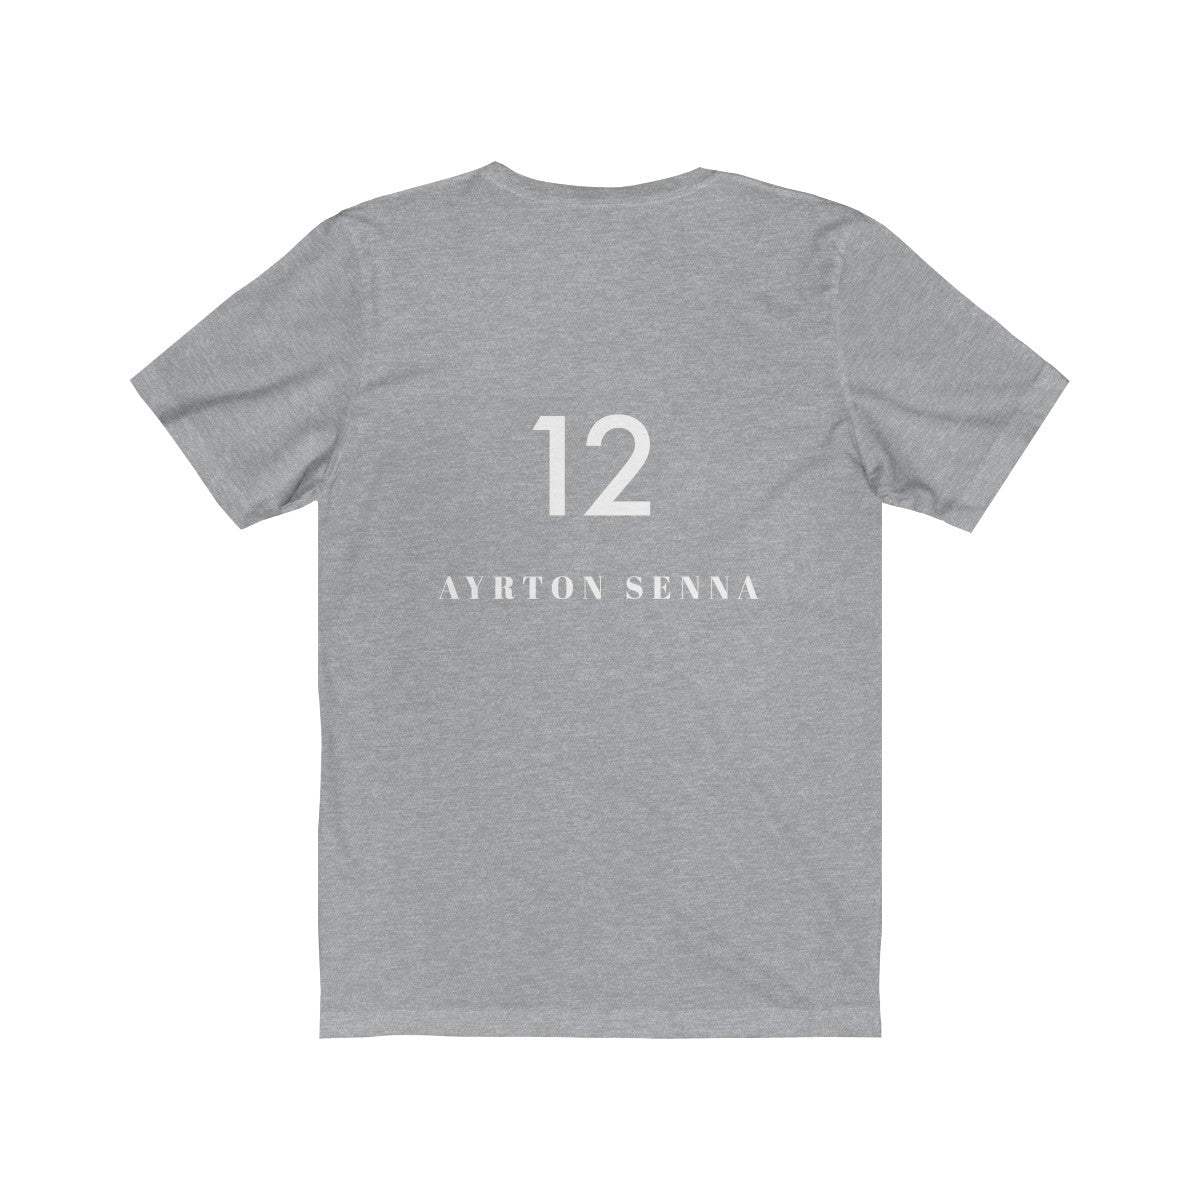 🔻AYRTON SENNA on the back #12 - Unisex Jersey Short Sleeve Tee